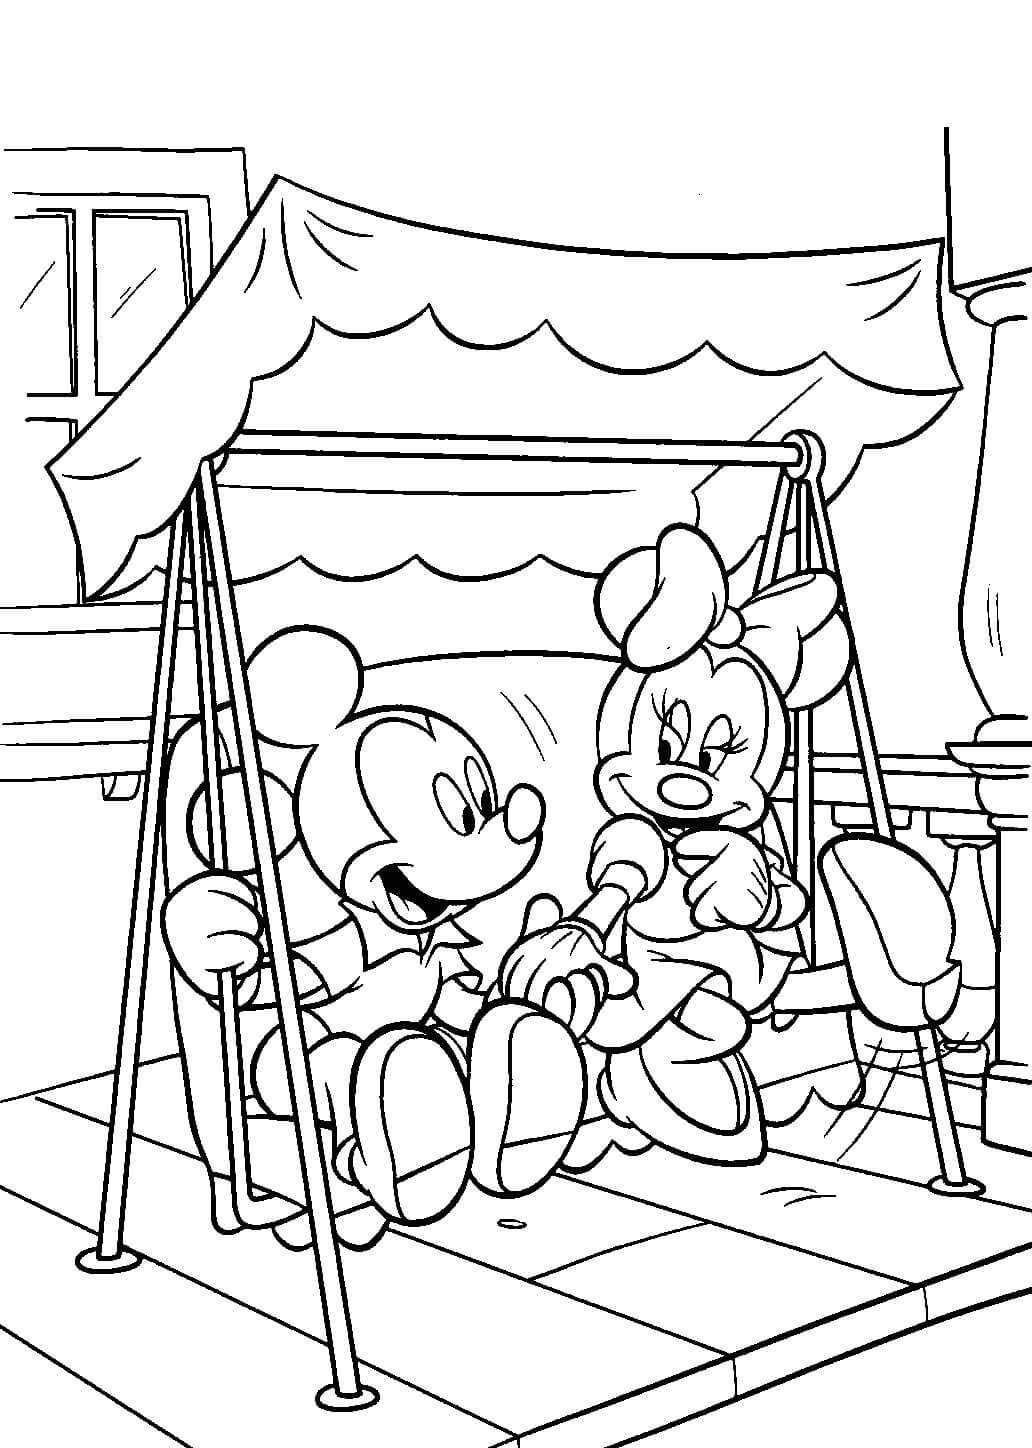 Mickey et Minnie Sur la Balançoire coloring page